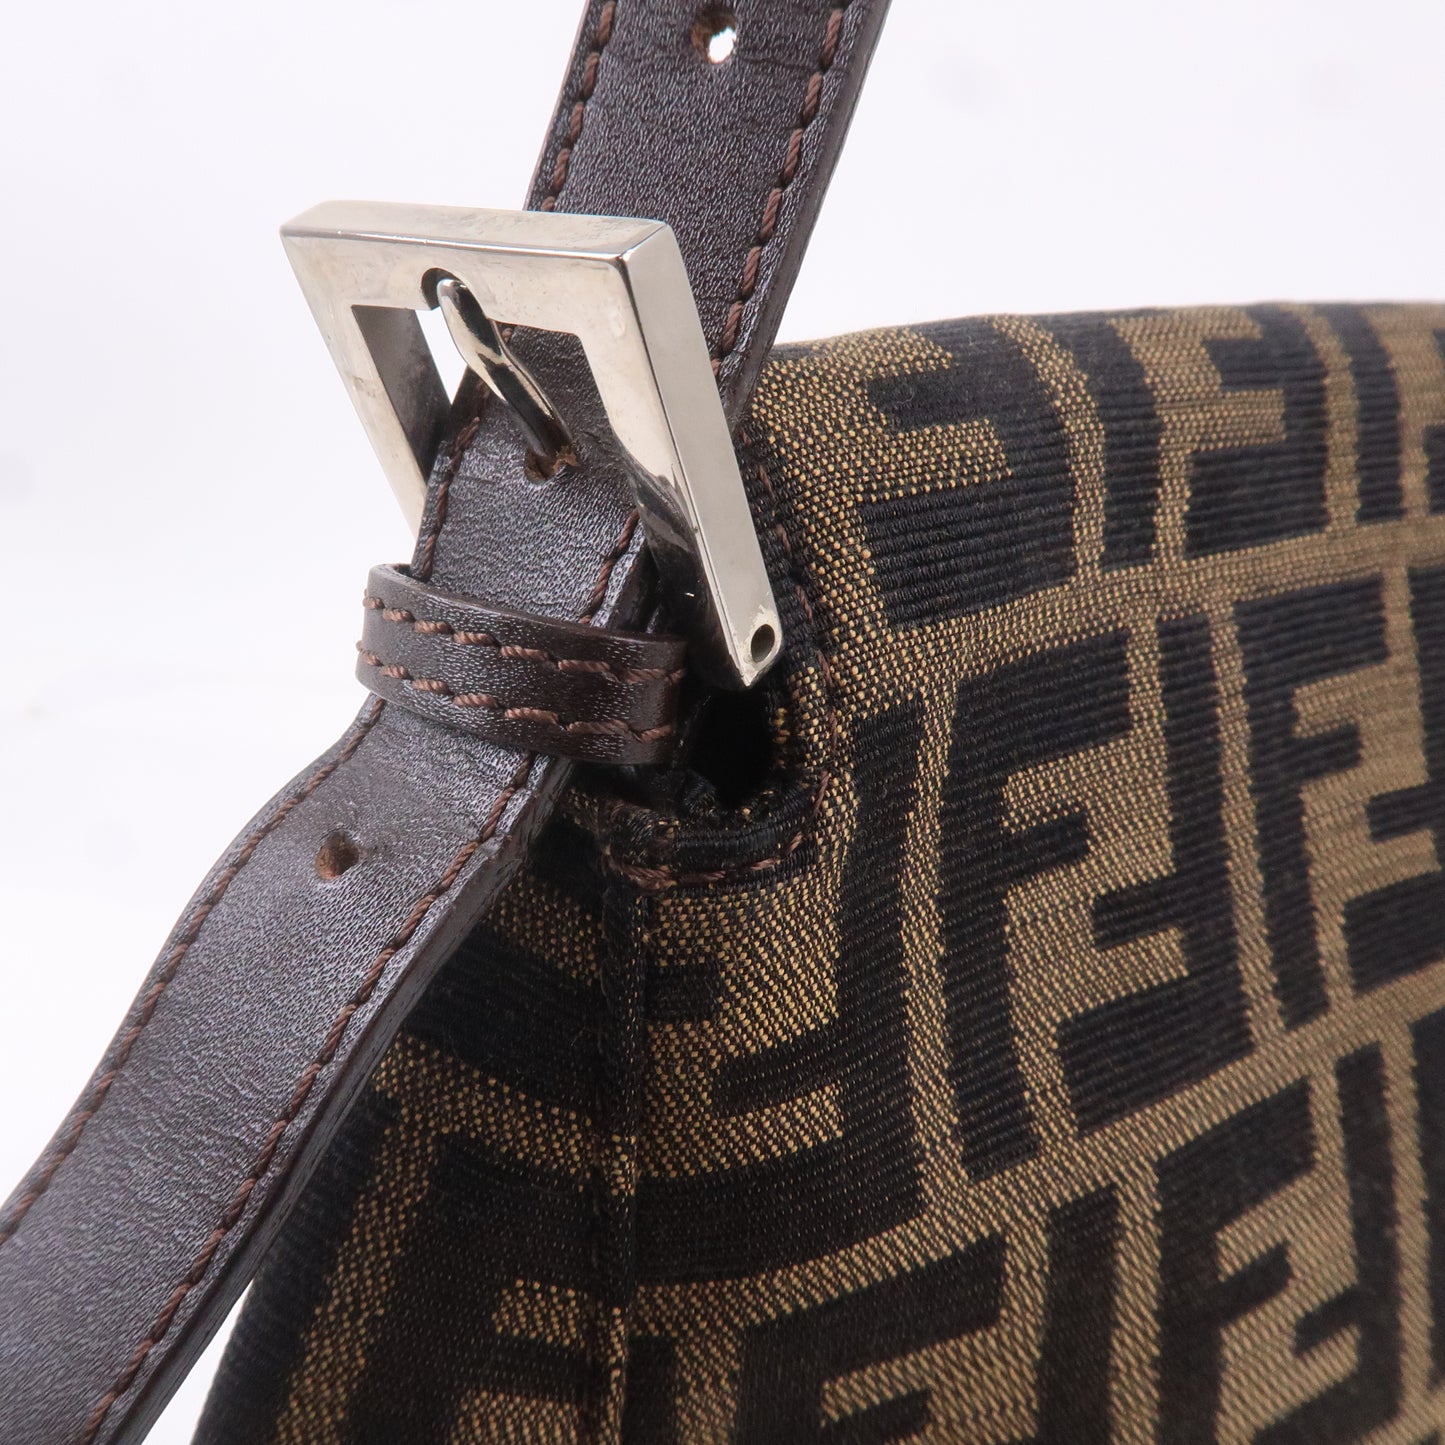 FENDI Zucca Canvas Leather Shoulder Bag 26325